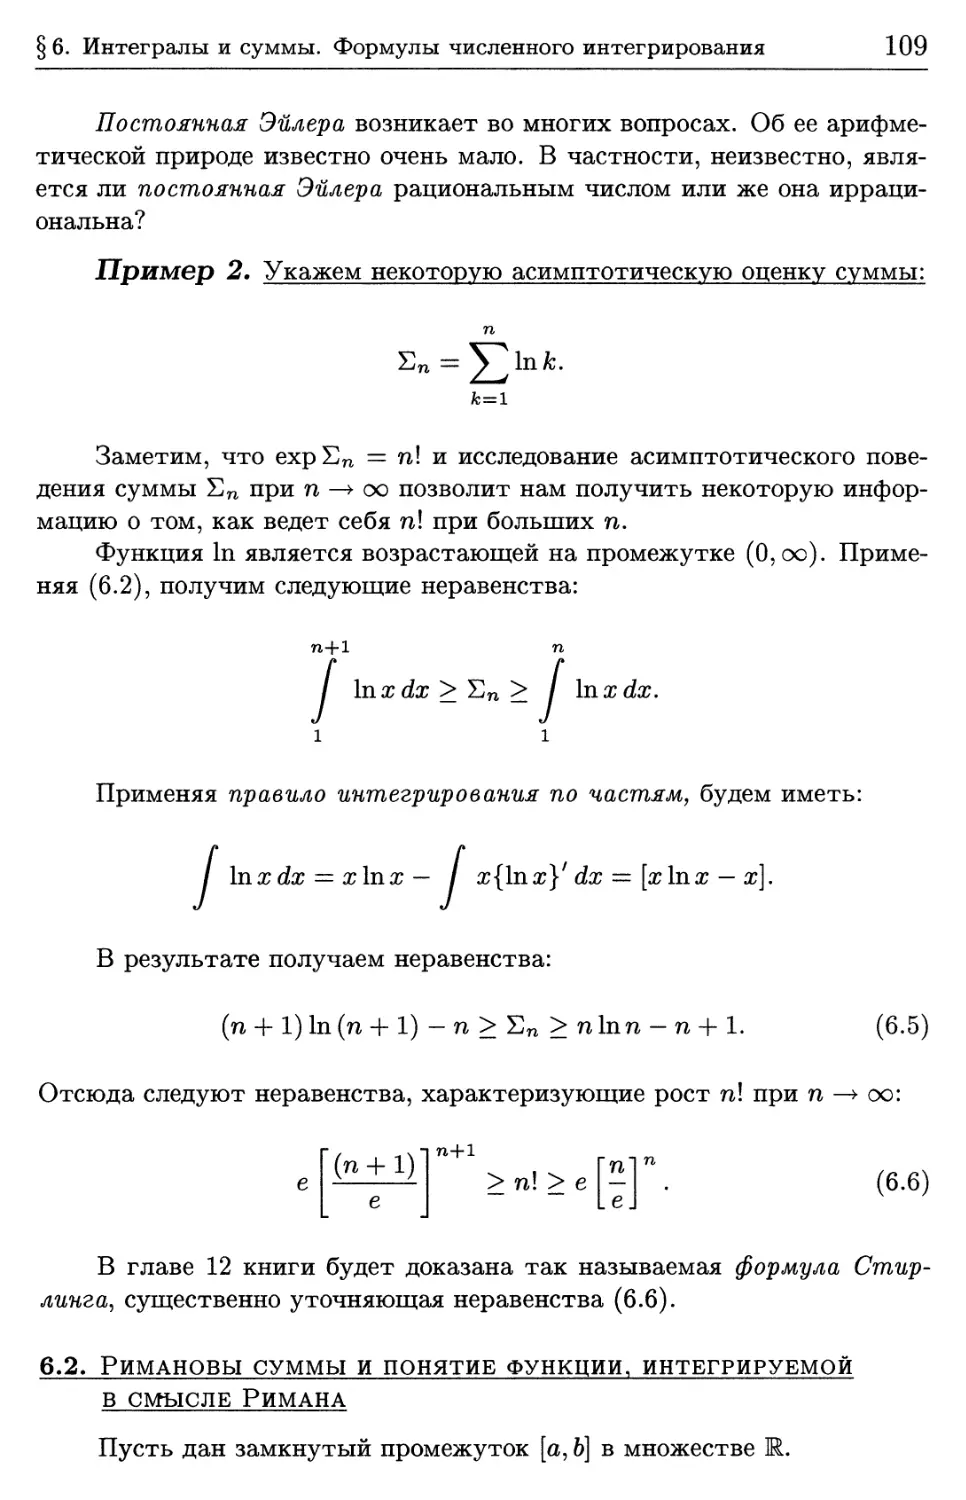 6.2. Римановы суммы и понятие функции, интегрируемой в смысле Римана